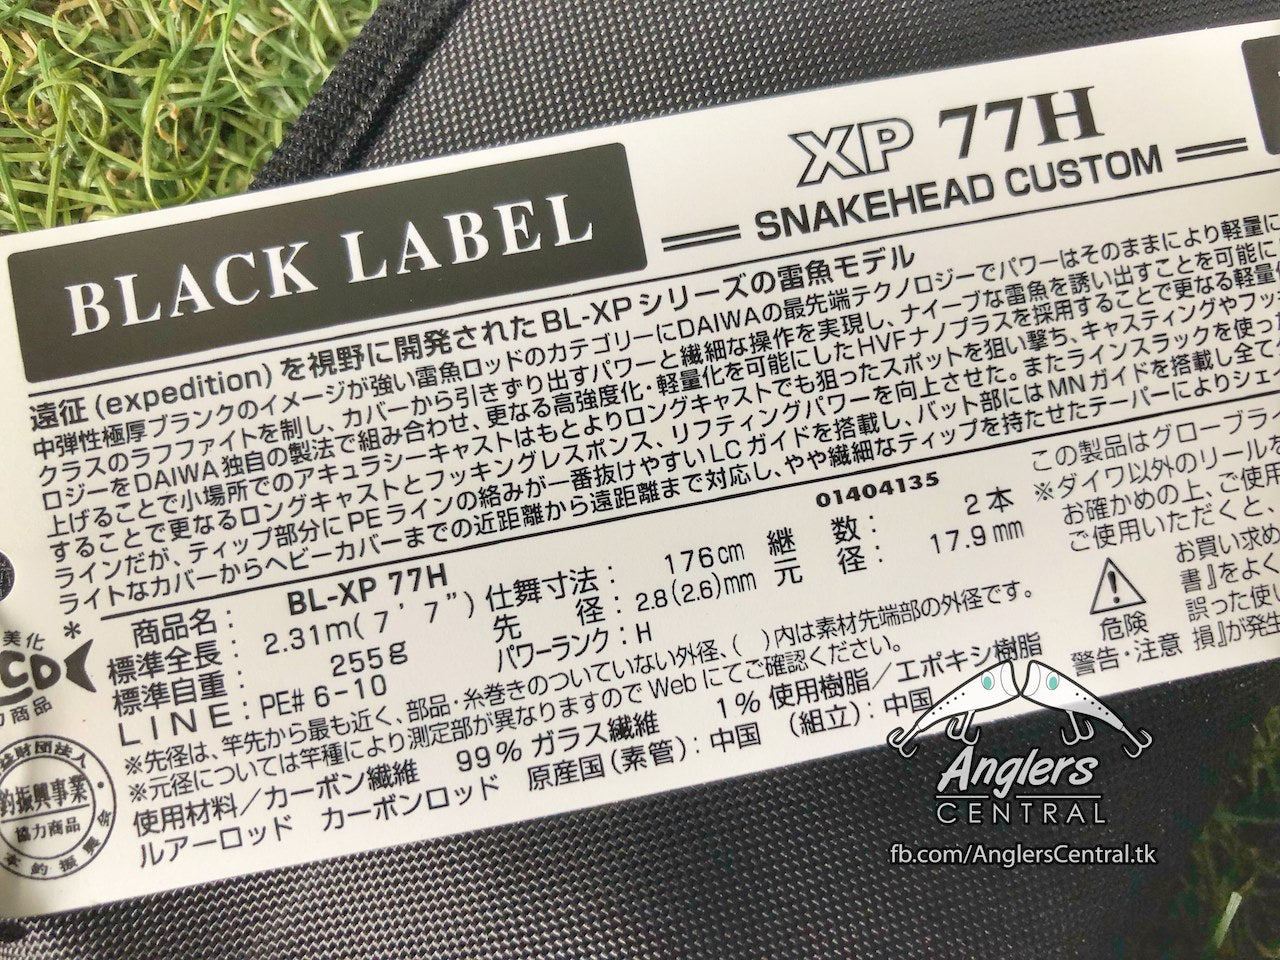 Black Label BL-XP 77H